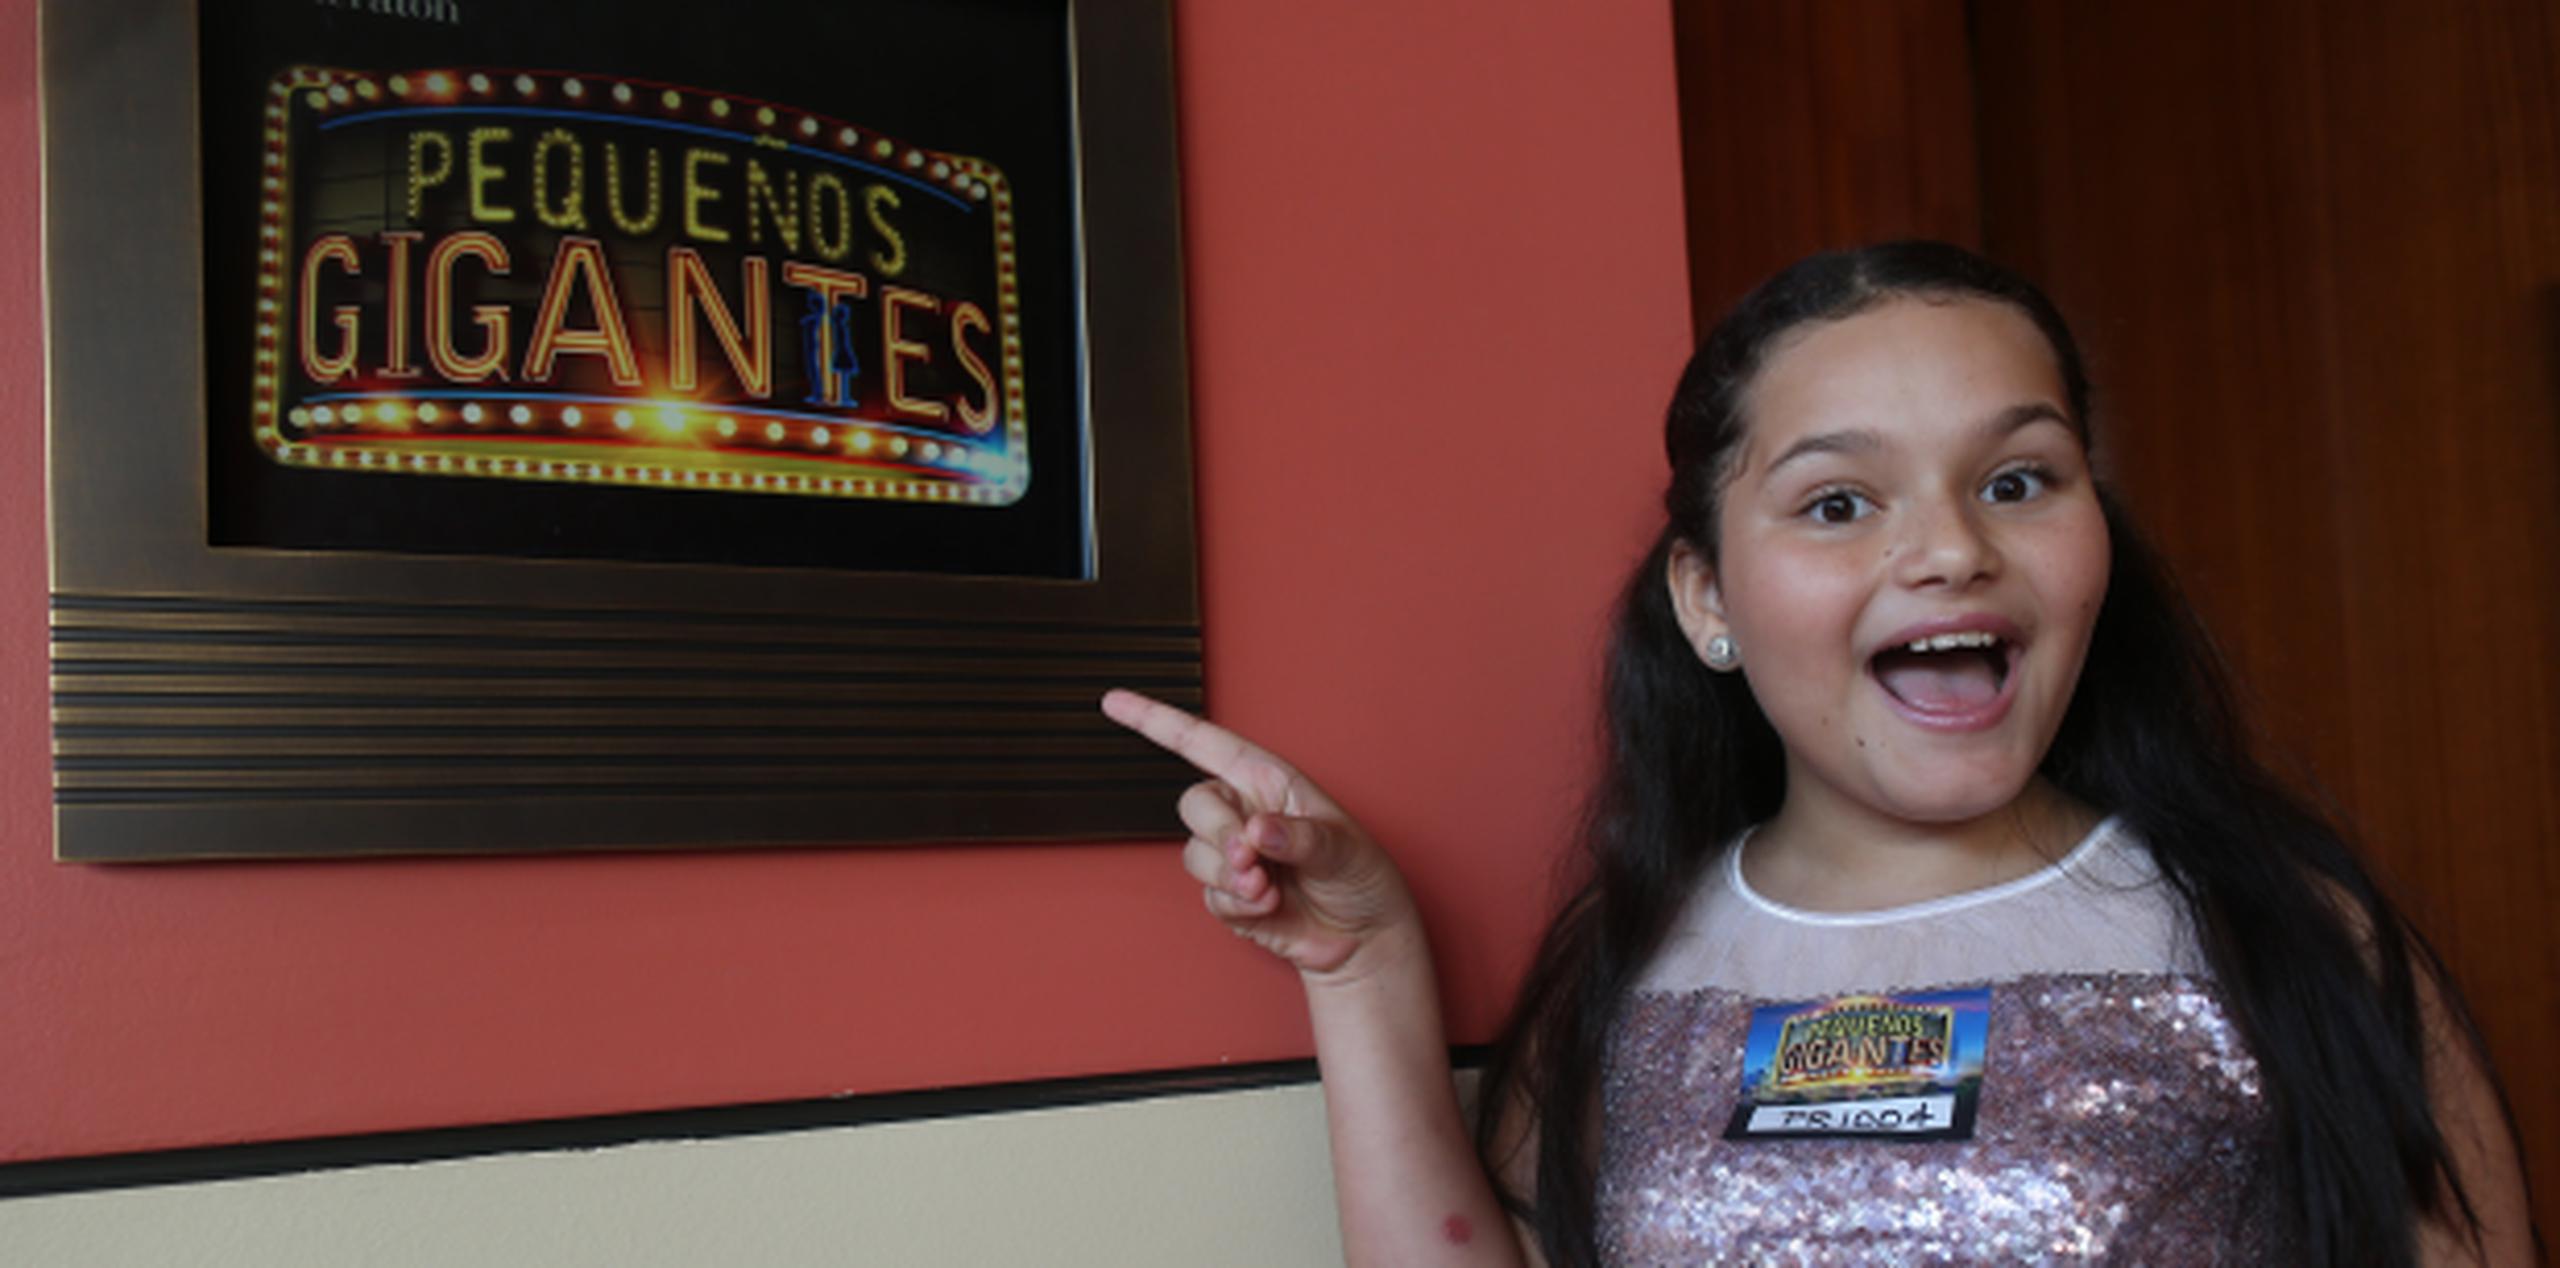 La pequeña Ariana Seinos fue una de las participantes en la audición. (Foto/Vanessa Serra)